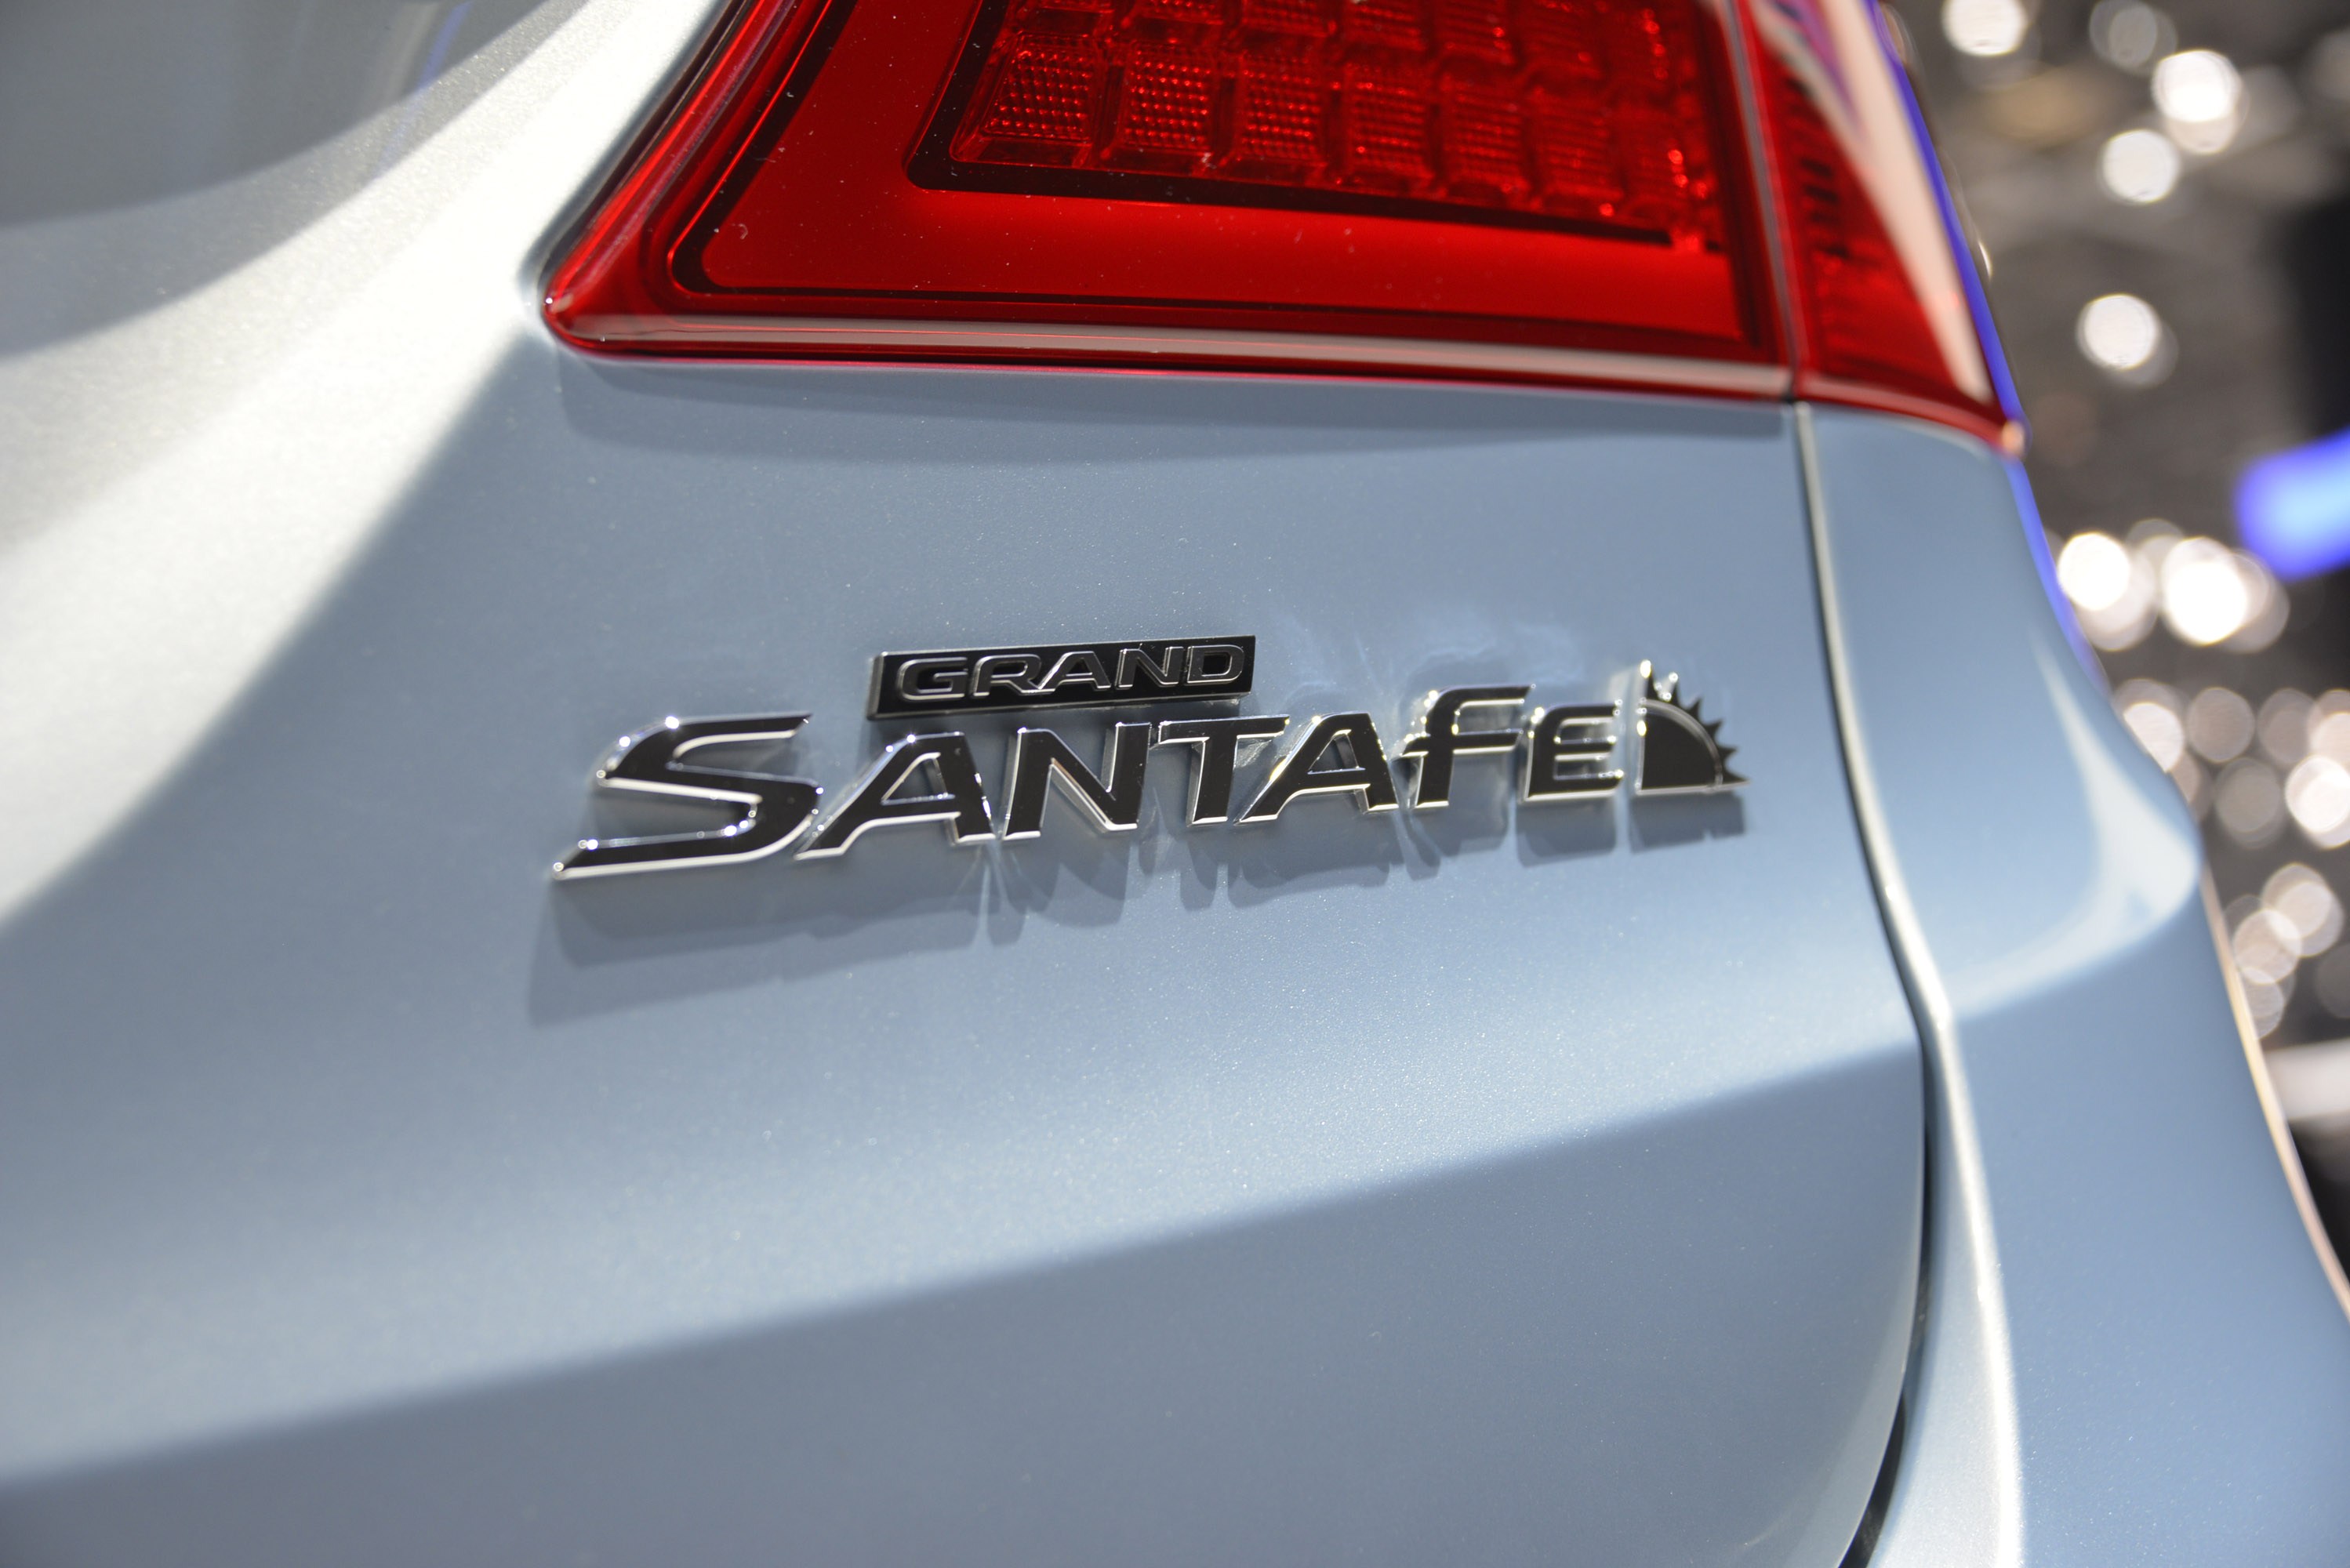 Hyundai Grand SantaFe Geneva